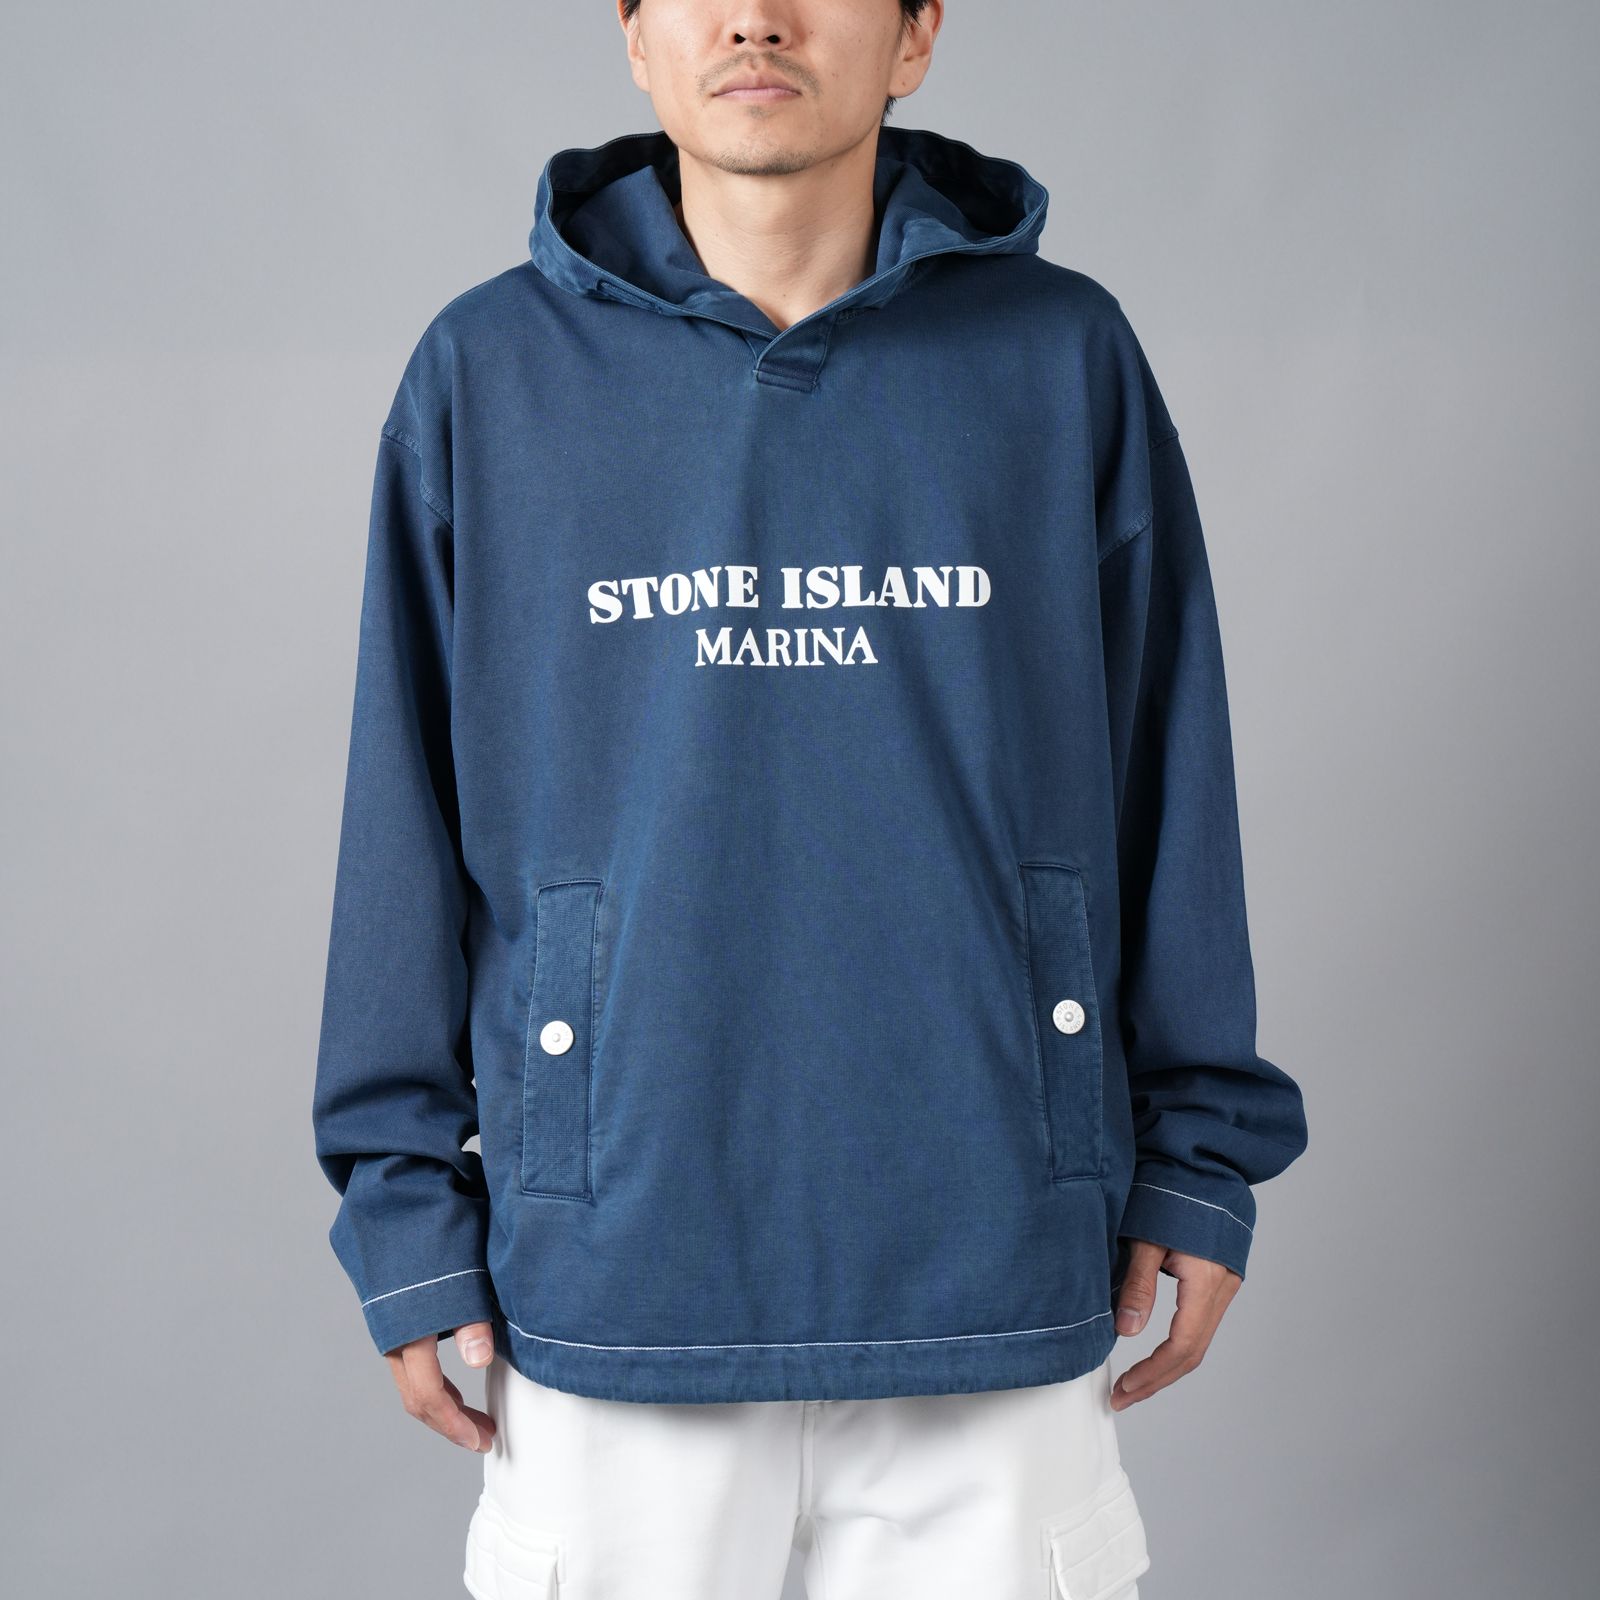 10,780円stone island marina フーデッドシャツパーカー